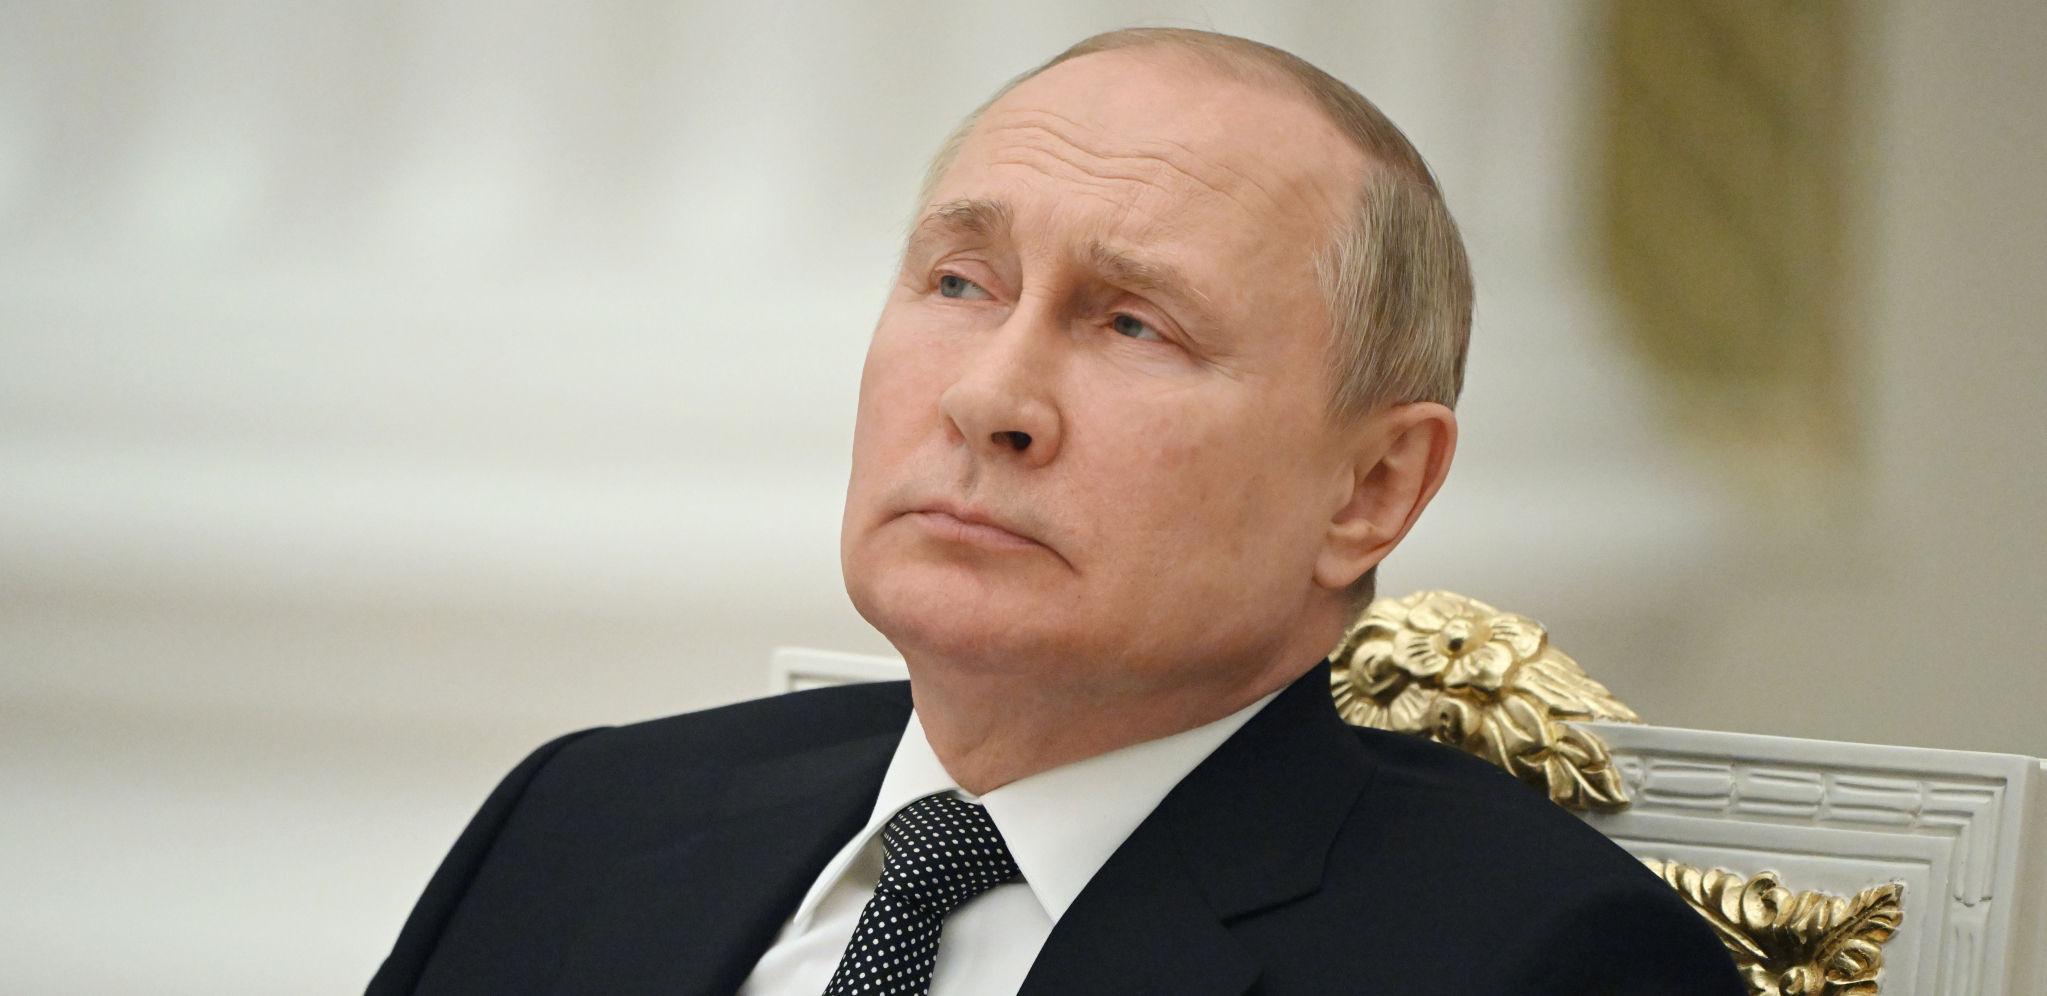 "RUSIJA IMA RAKETE ZA JOŠ DVA VELIKA NAPADA" Šef ukrajinskih obaveštajaca otkriva Putinov potez 5. januara